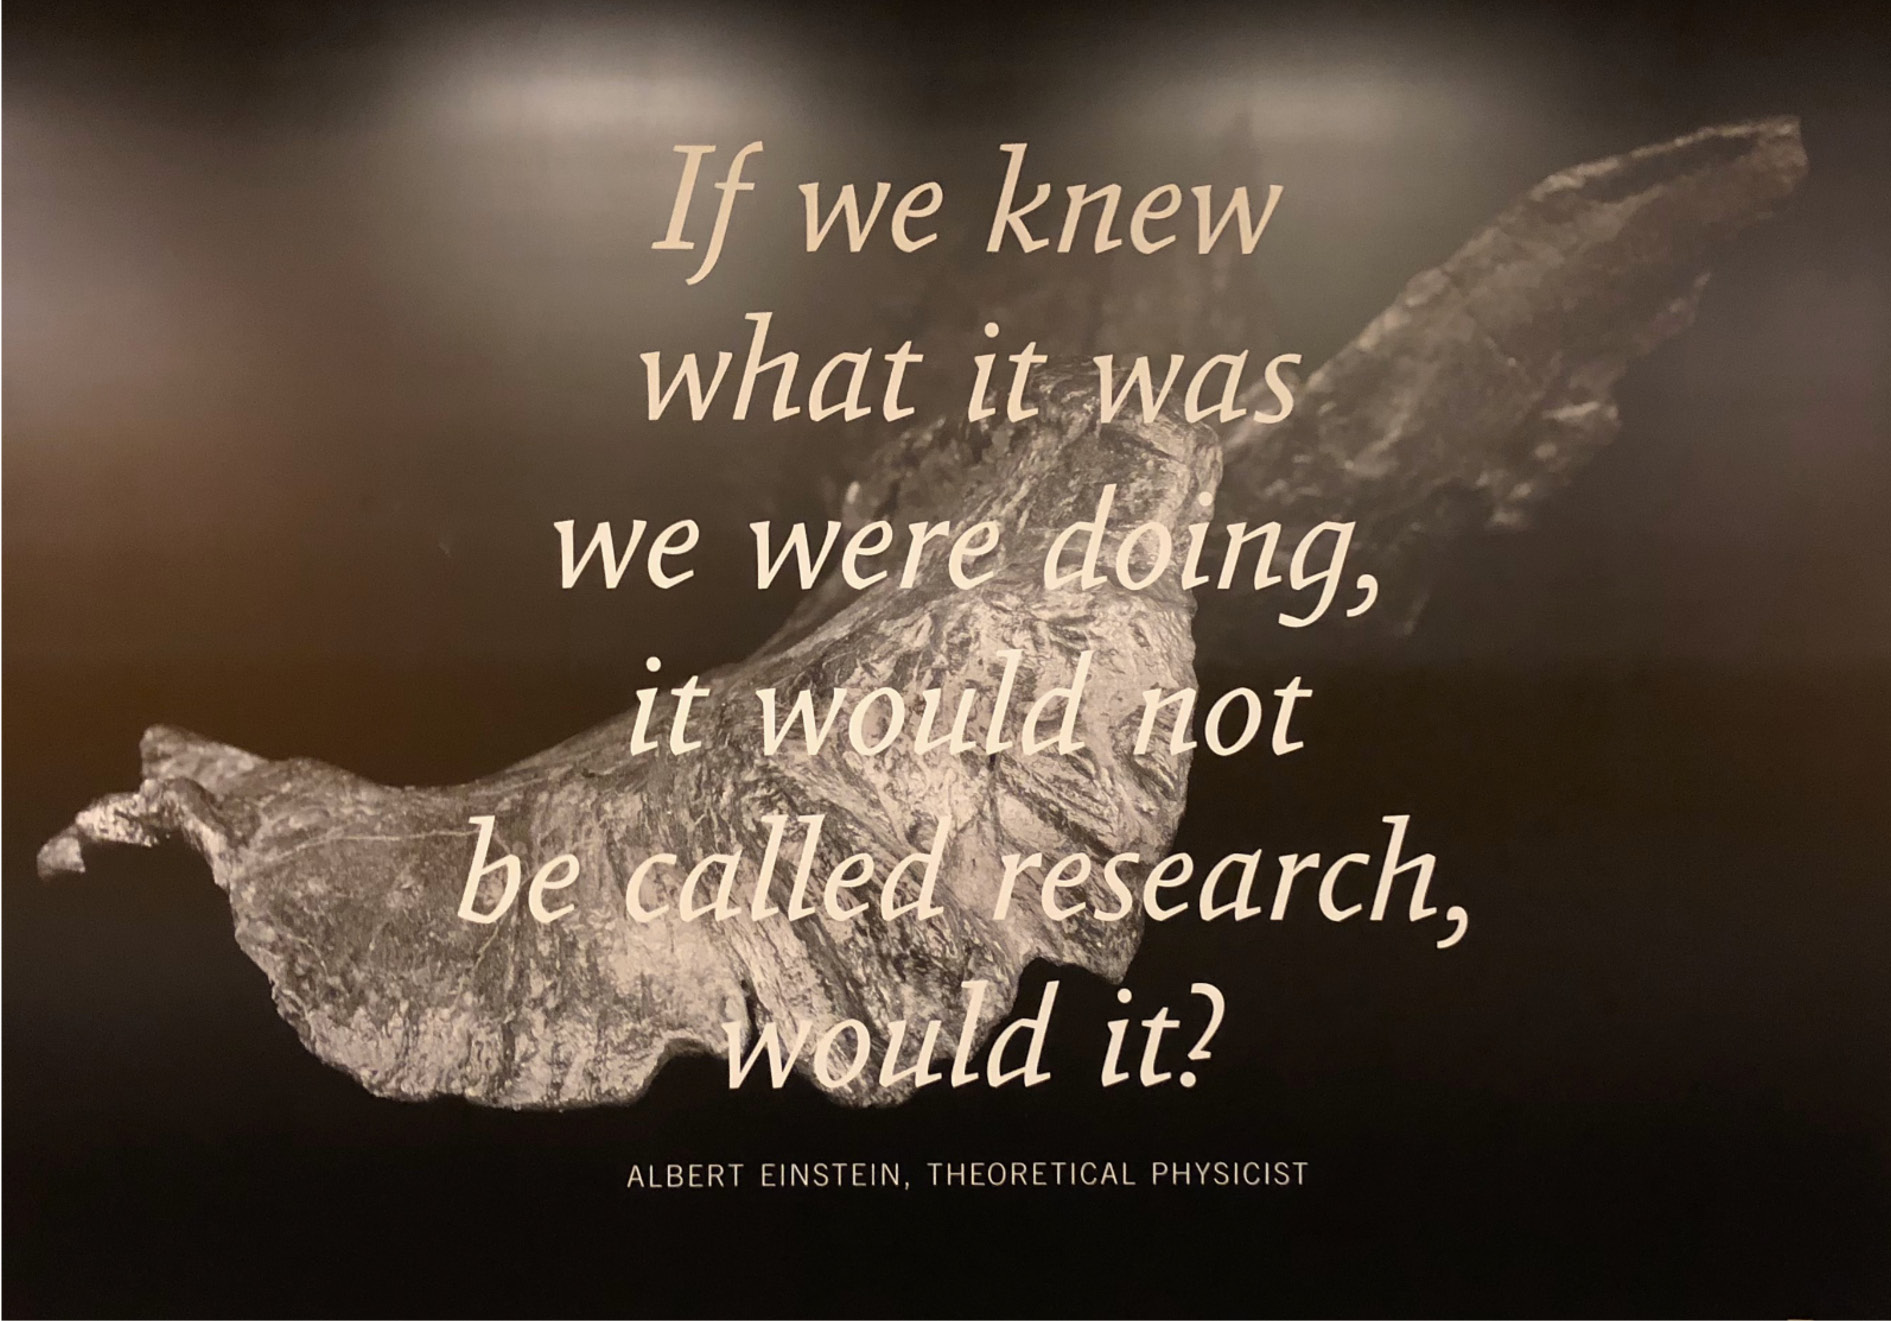 Die Abbildung zeigt ein Poster, welches in einer Berliner U-Bahn-Station hing. Auf dem Poster wird Albert Einstein mit den Worten zitiert: "If we knew what it was we were doing, it would not be called research, would it?"